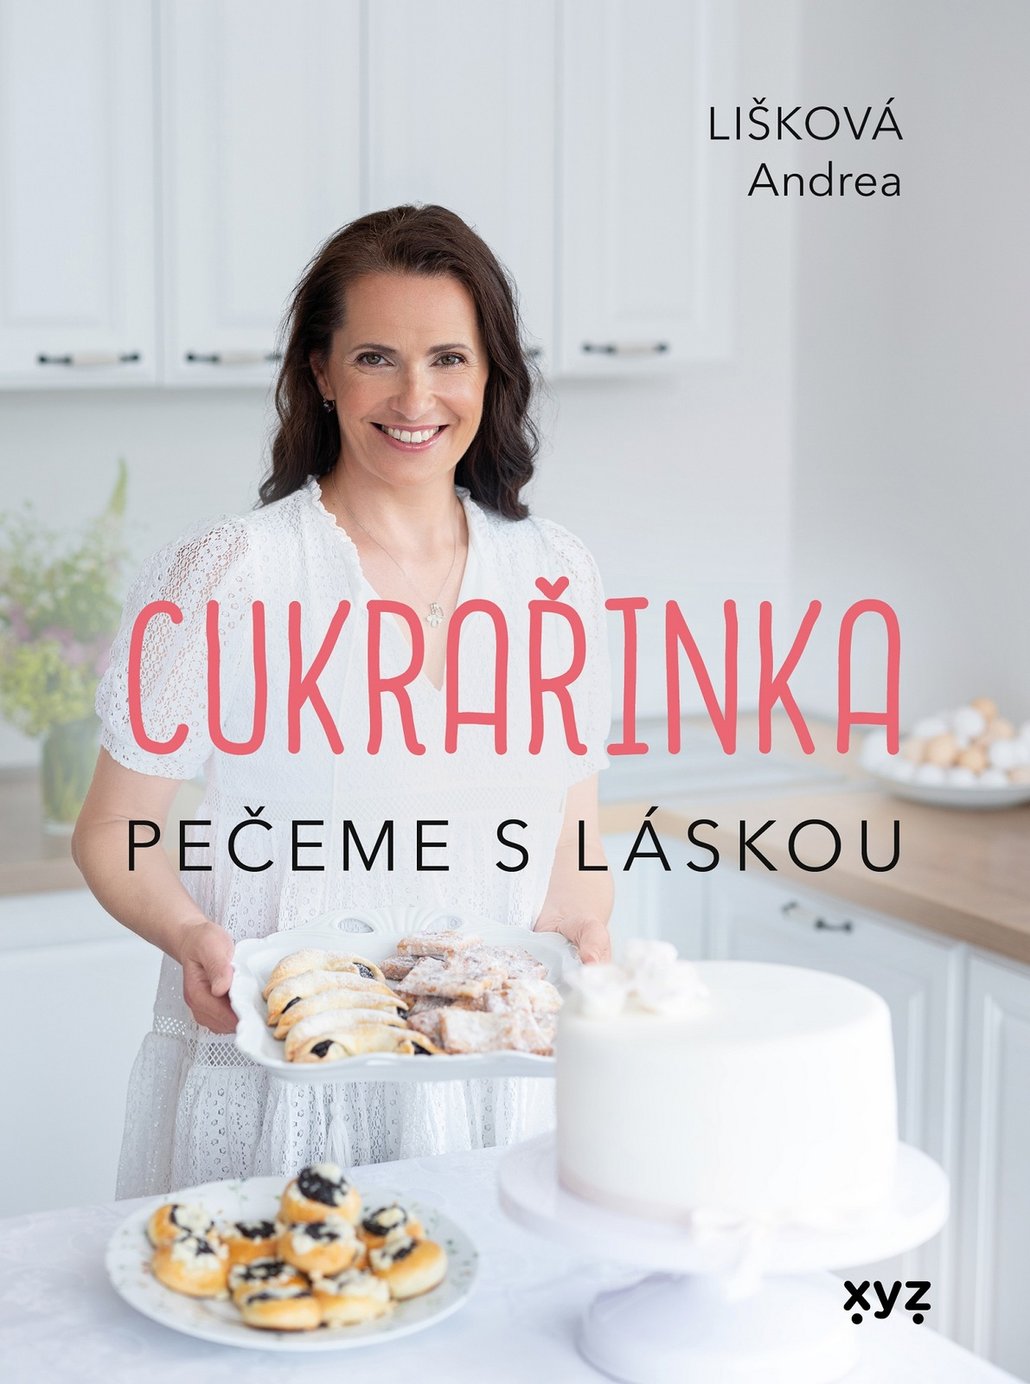 Recept na koláč najdete v knize Andrey Liškové Cukrařinka, která je plná prověřených sladkých receptů